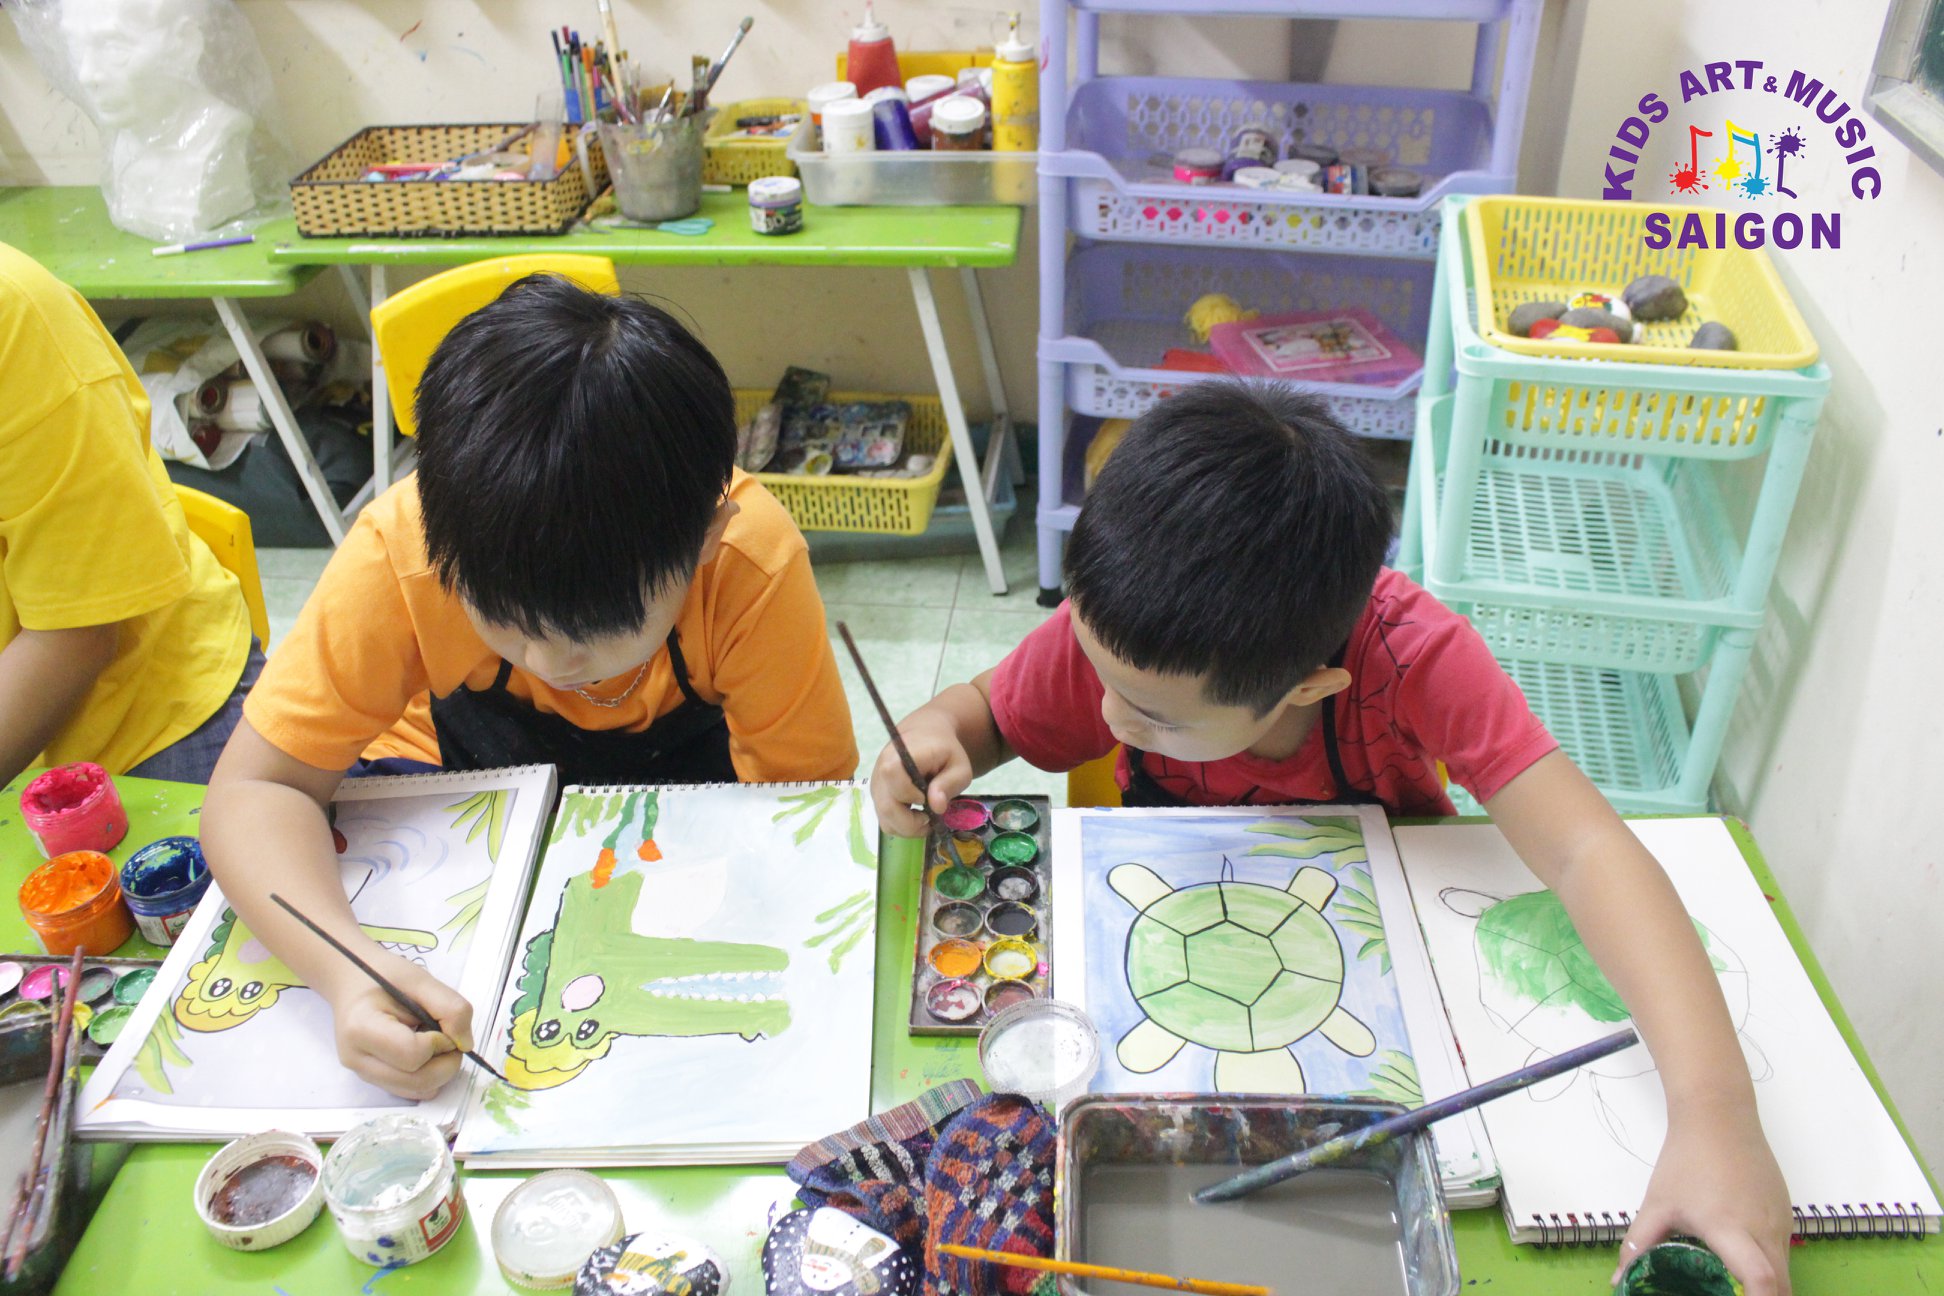 Hướng Dẫn Bé Vẽ Con Vật Từ Chữ Số Cực Kì Đơn Giản Và Sáng Tạo - Kids  Art&Music Saigon